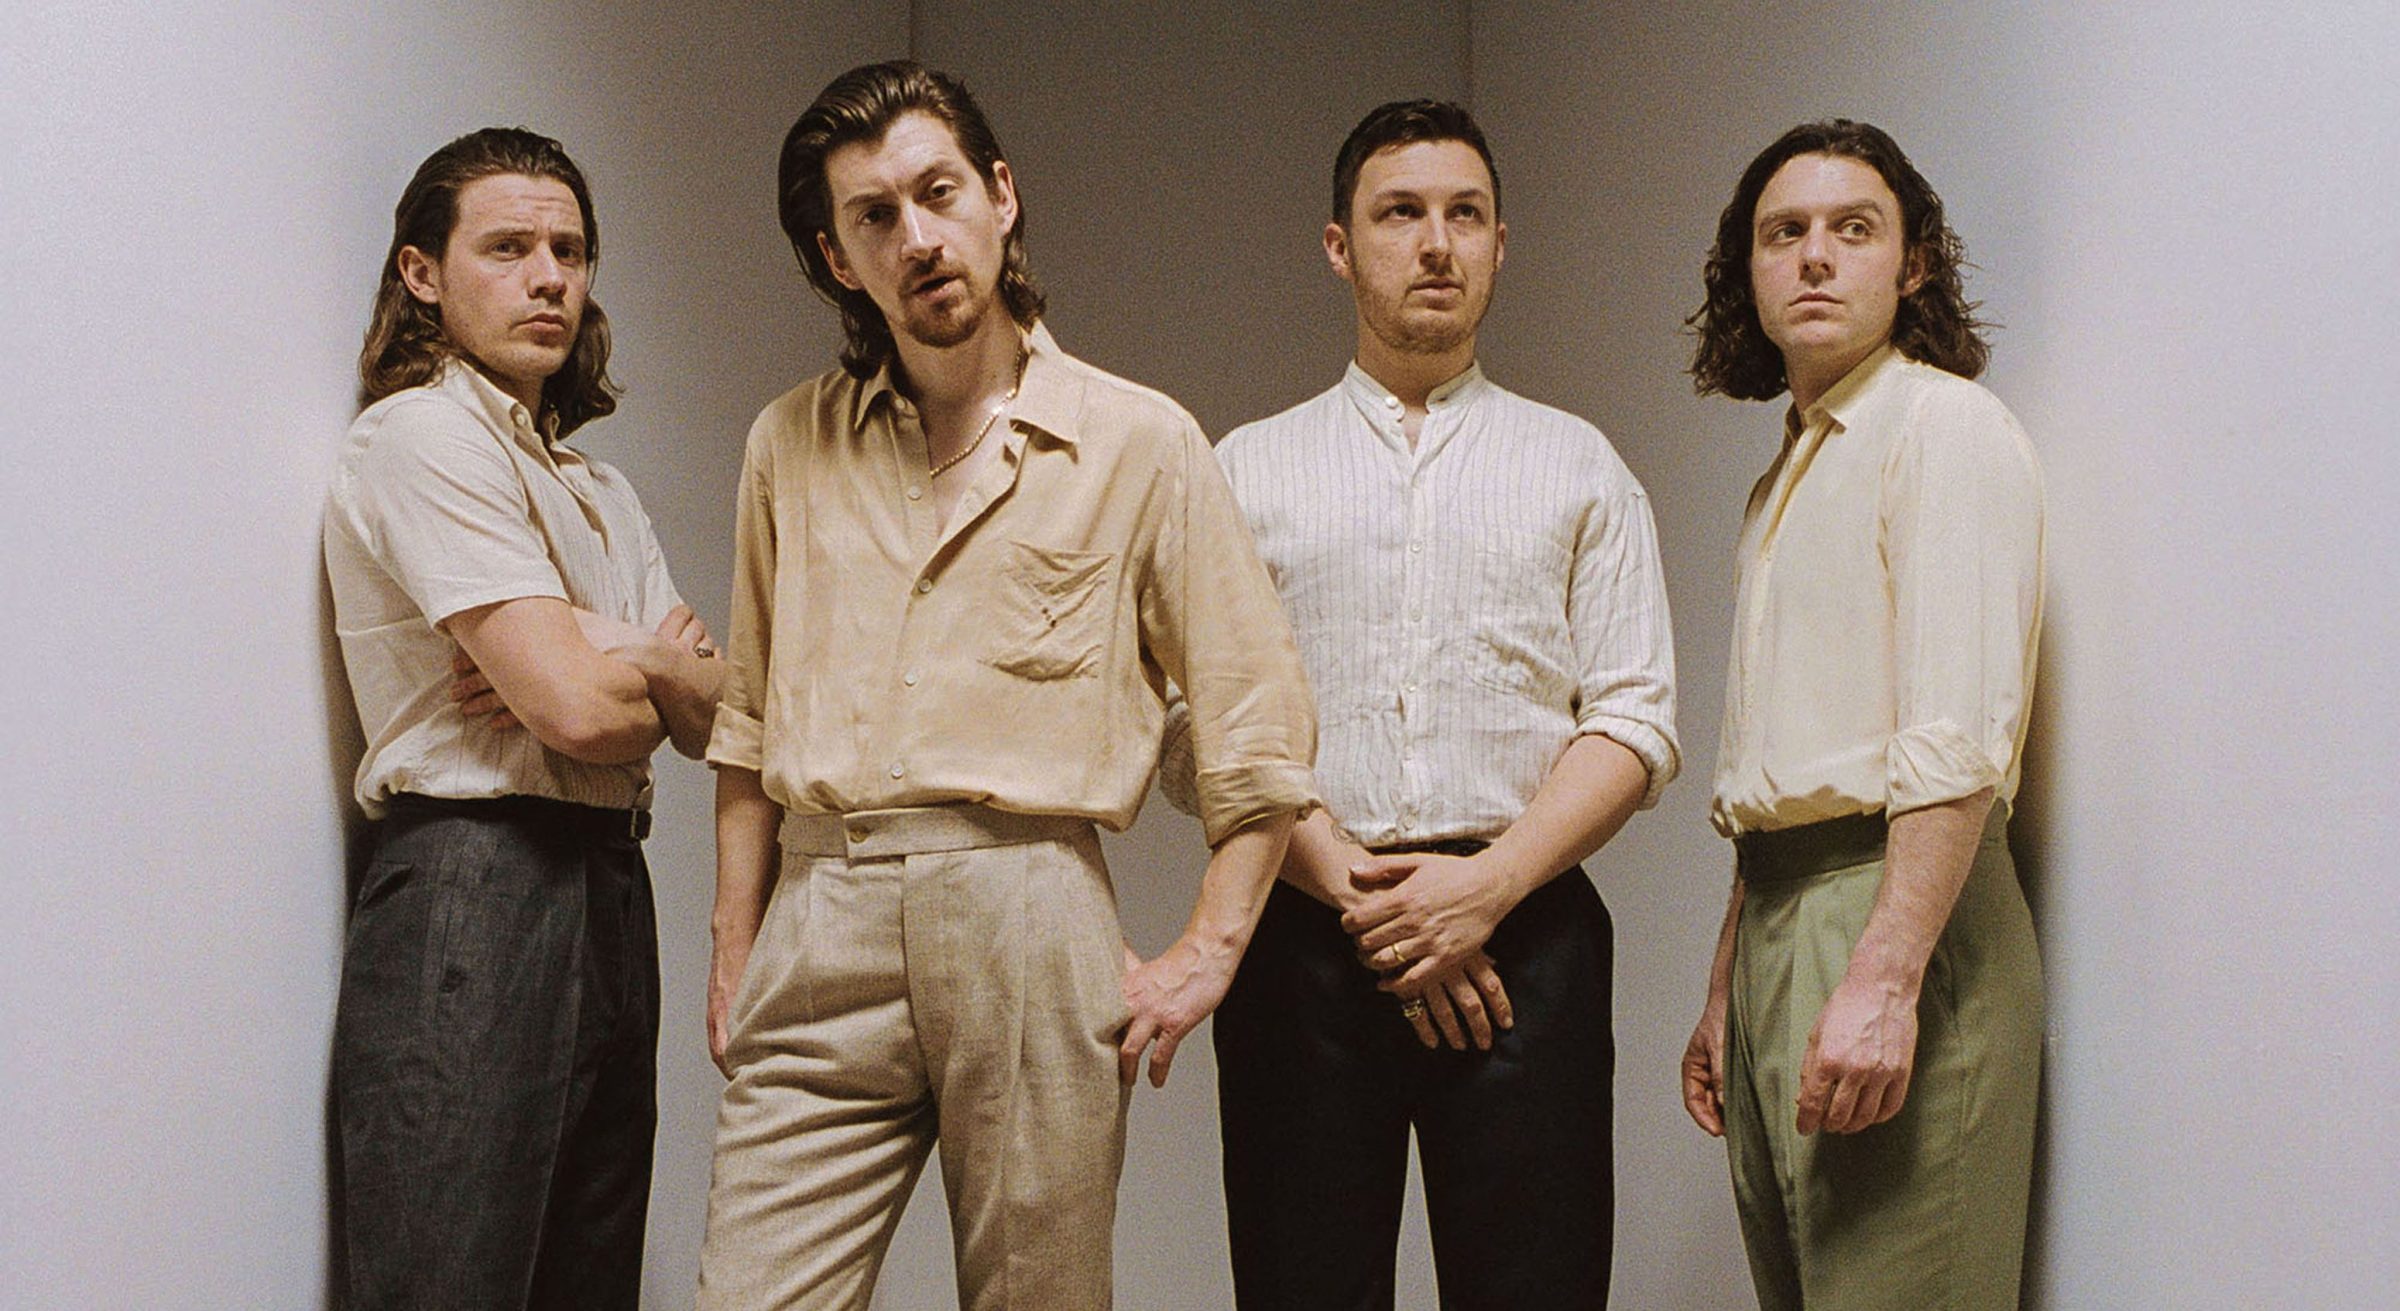 Le retour imminent d’Arctic Monkeys trois ans après leur dernier album